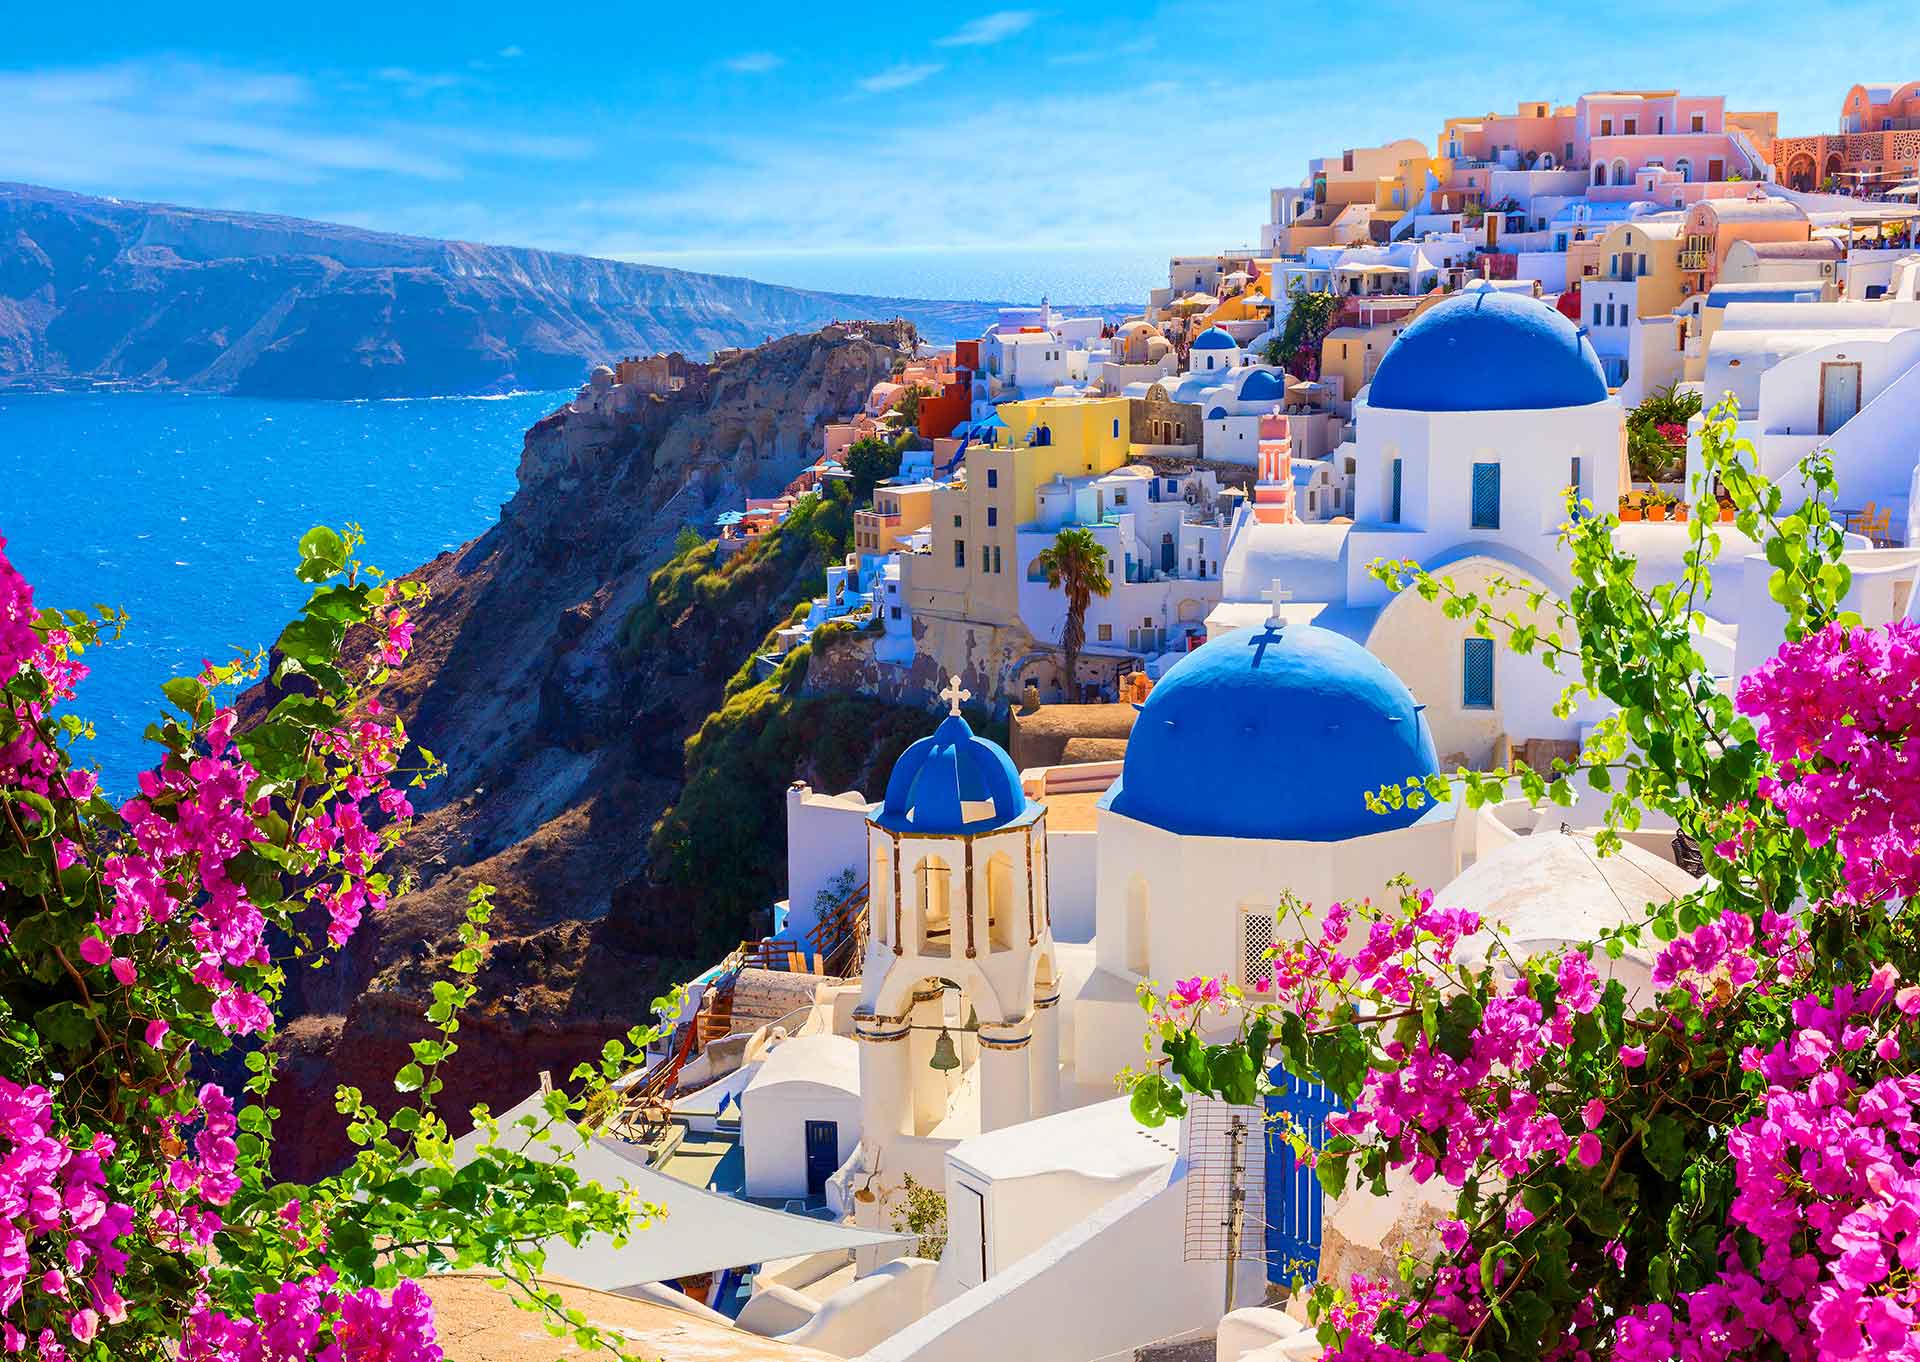 Puzzle Enjoy Vista de Santorini con Flores, Grecia de 1000 Pzs